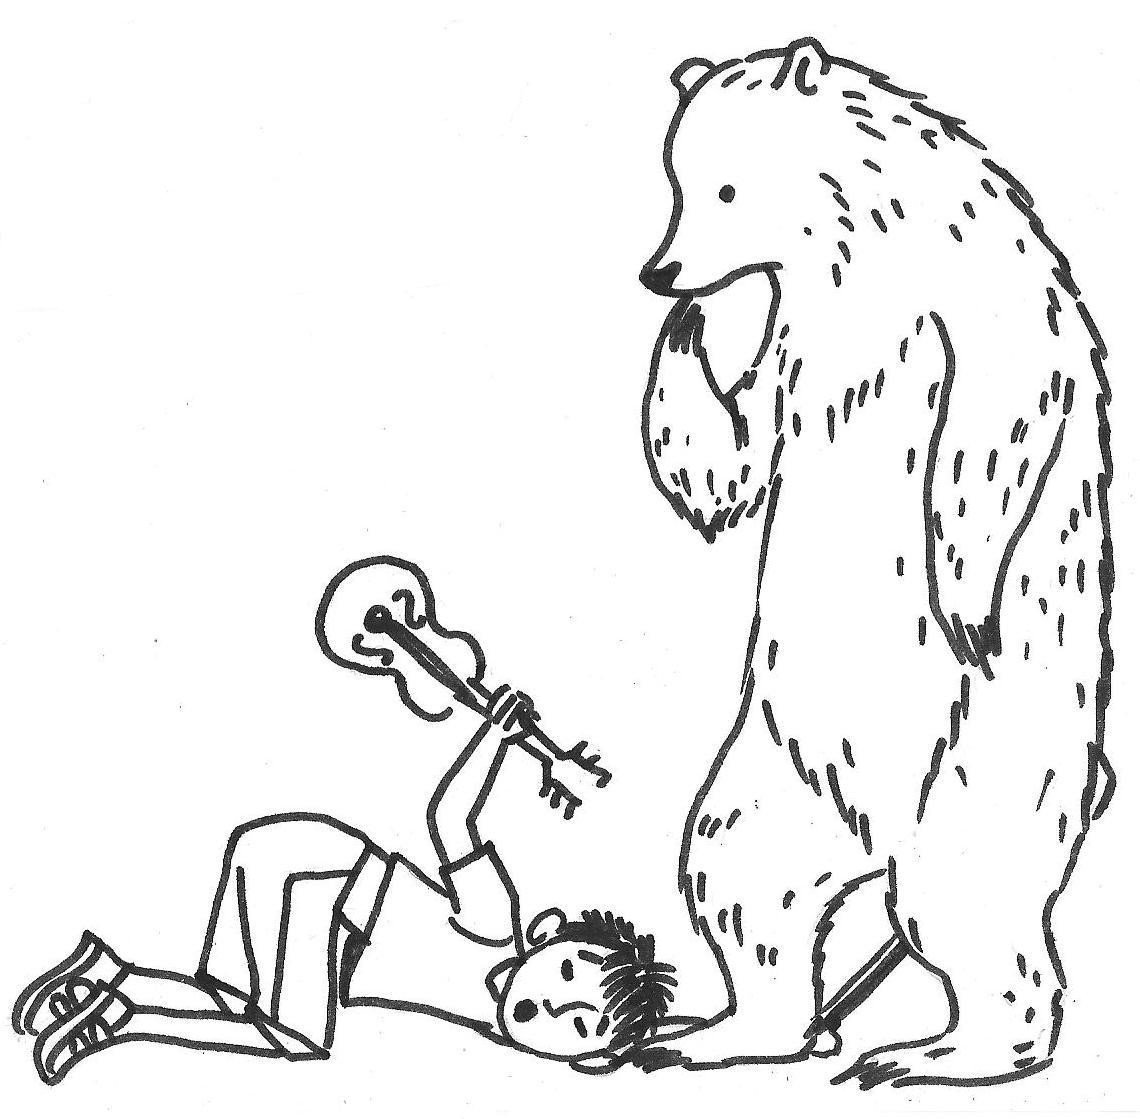 Раскраска Животные Медведь и волк